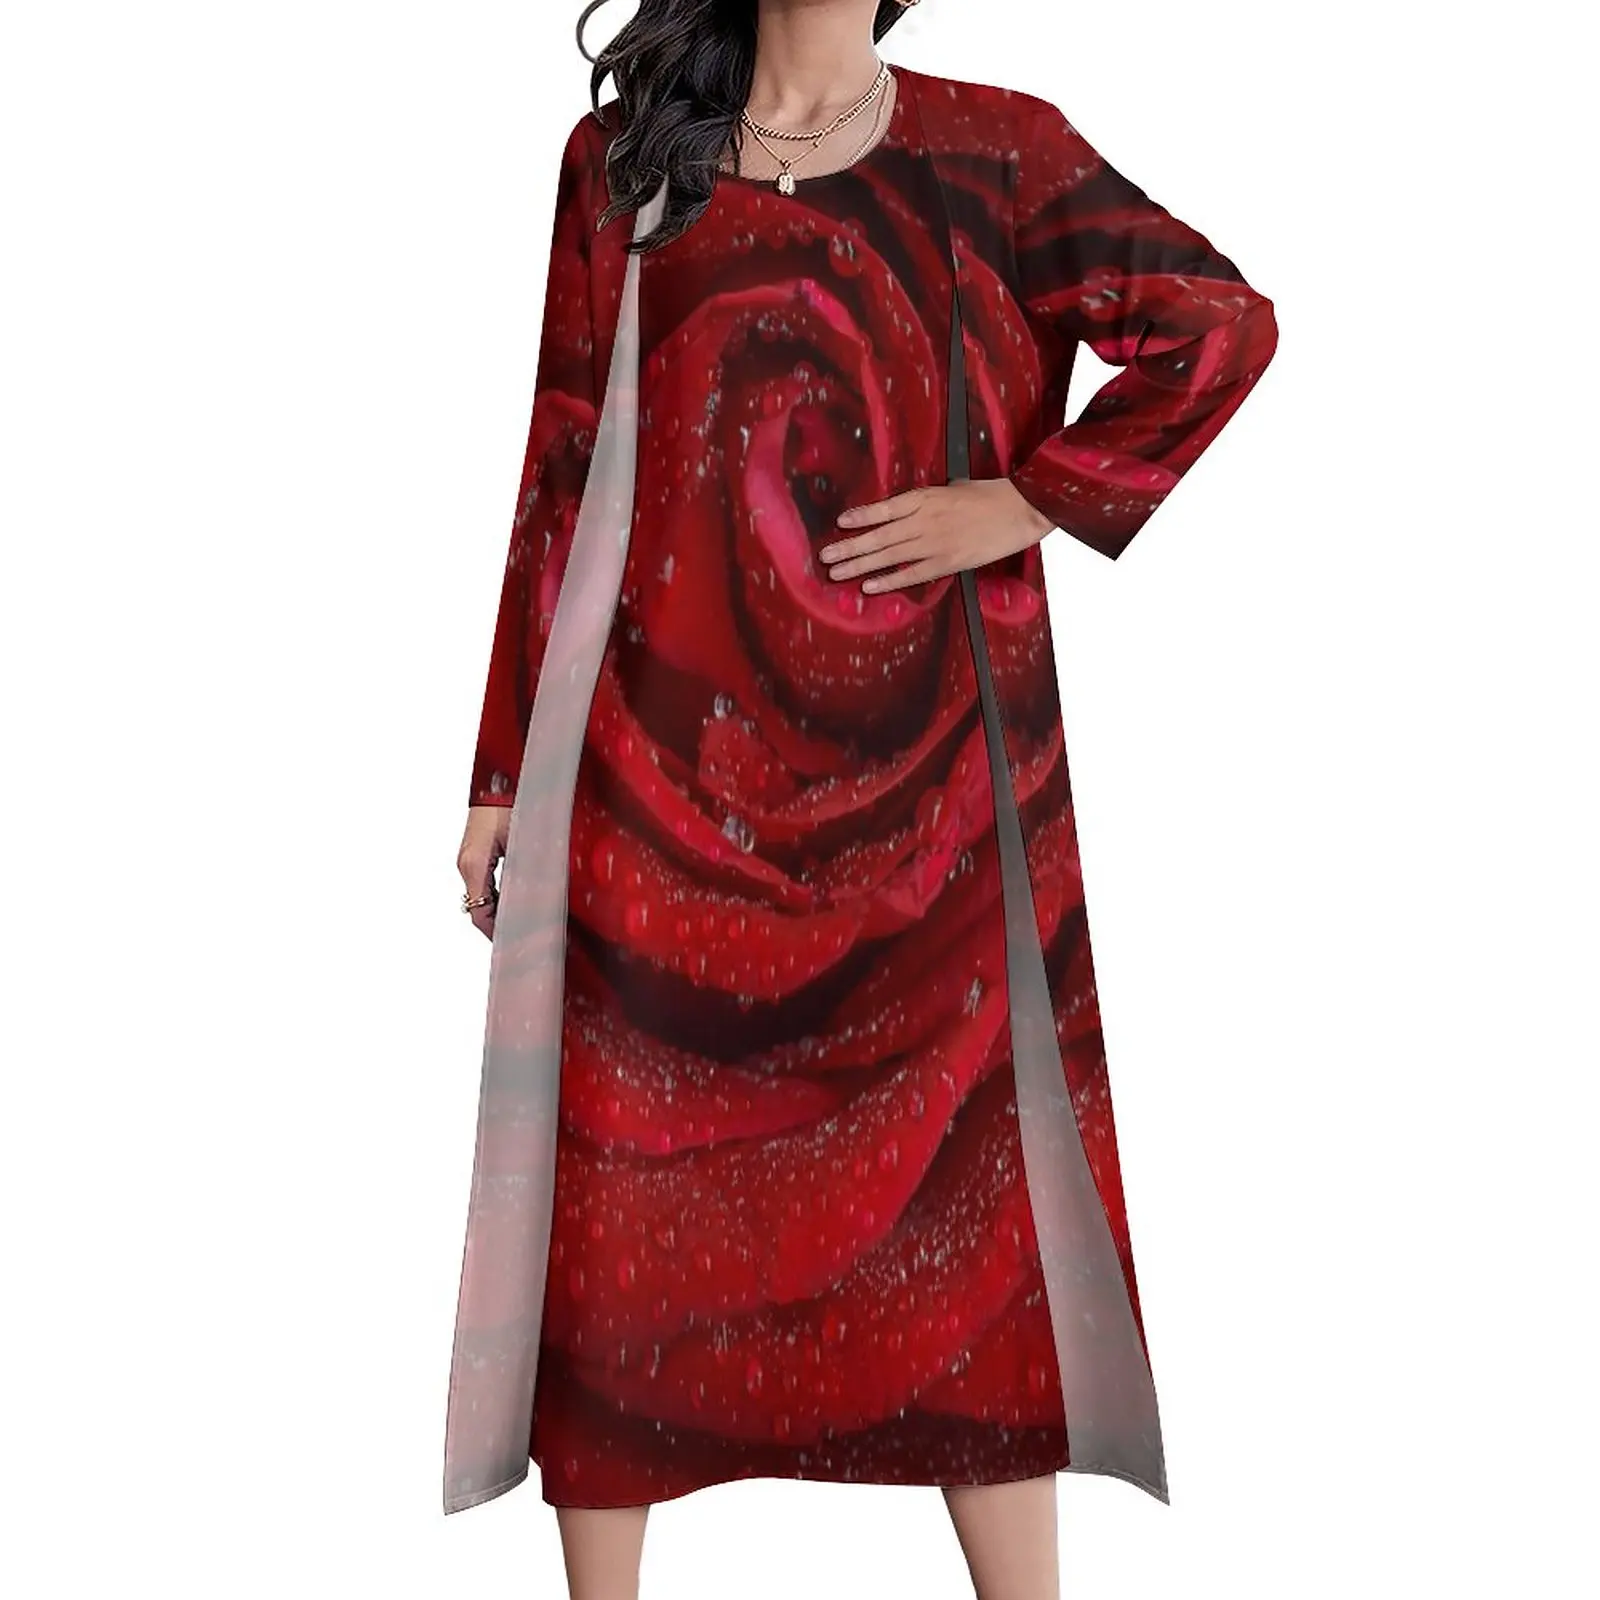 

Женское длинное платье с цветочным принтом, повседневное элегантное платье-макси с принтом красных роз, большой размер 5XL, для осени